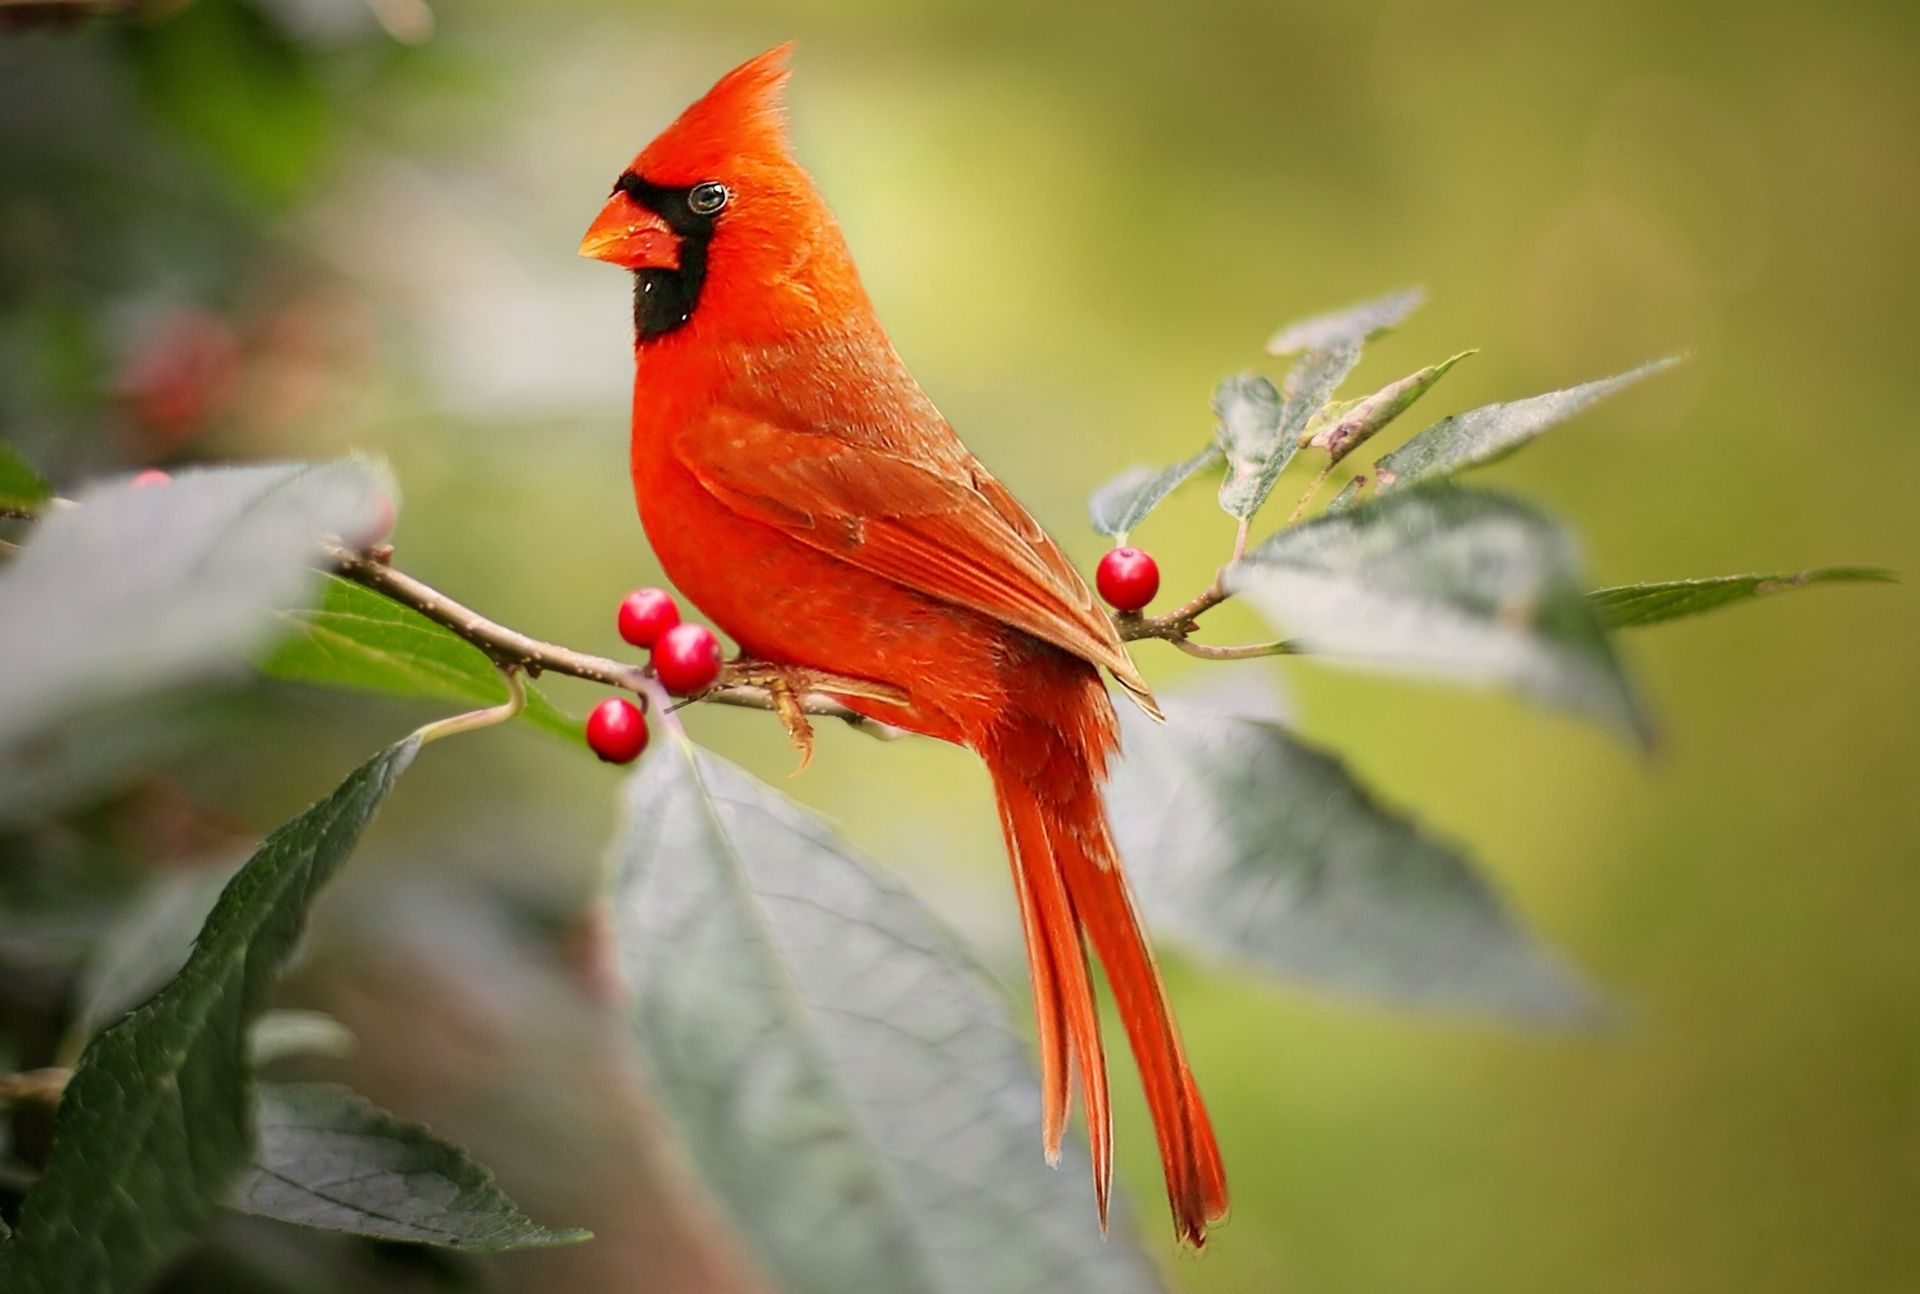 cardinal bird meaning